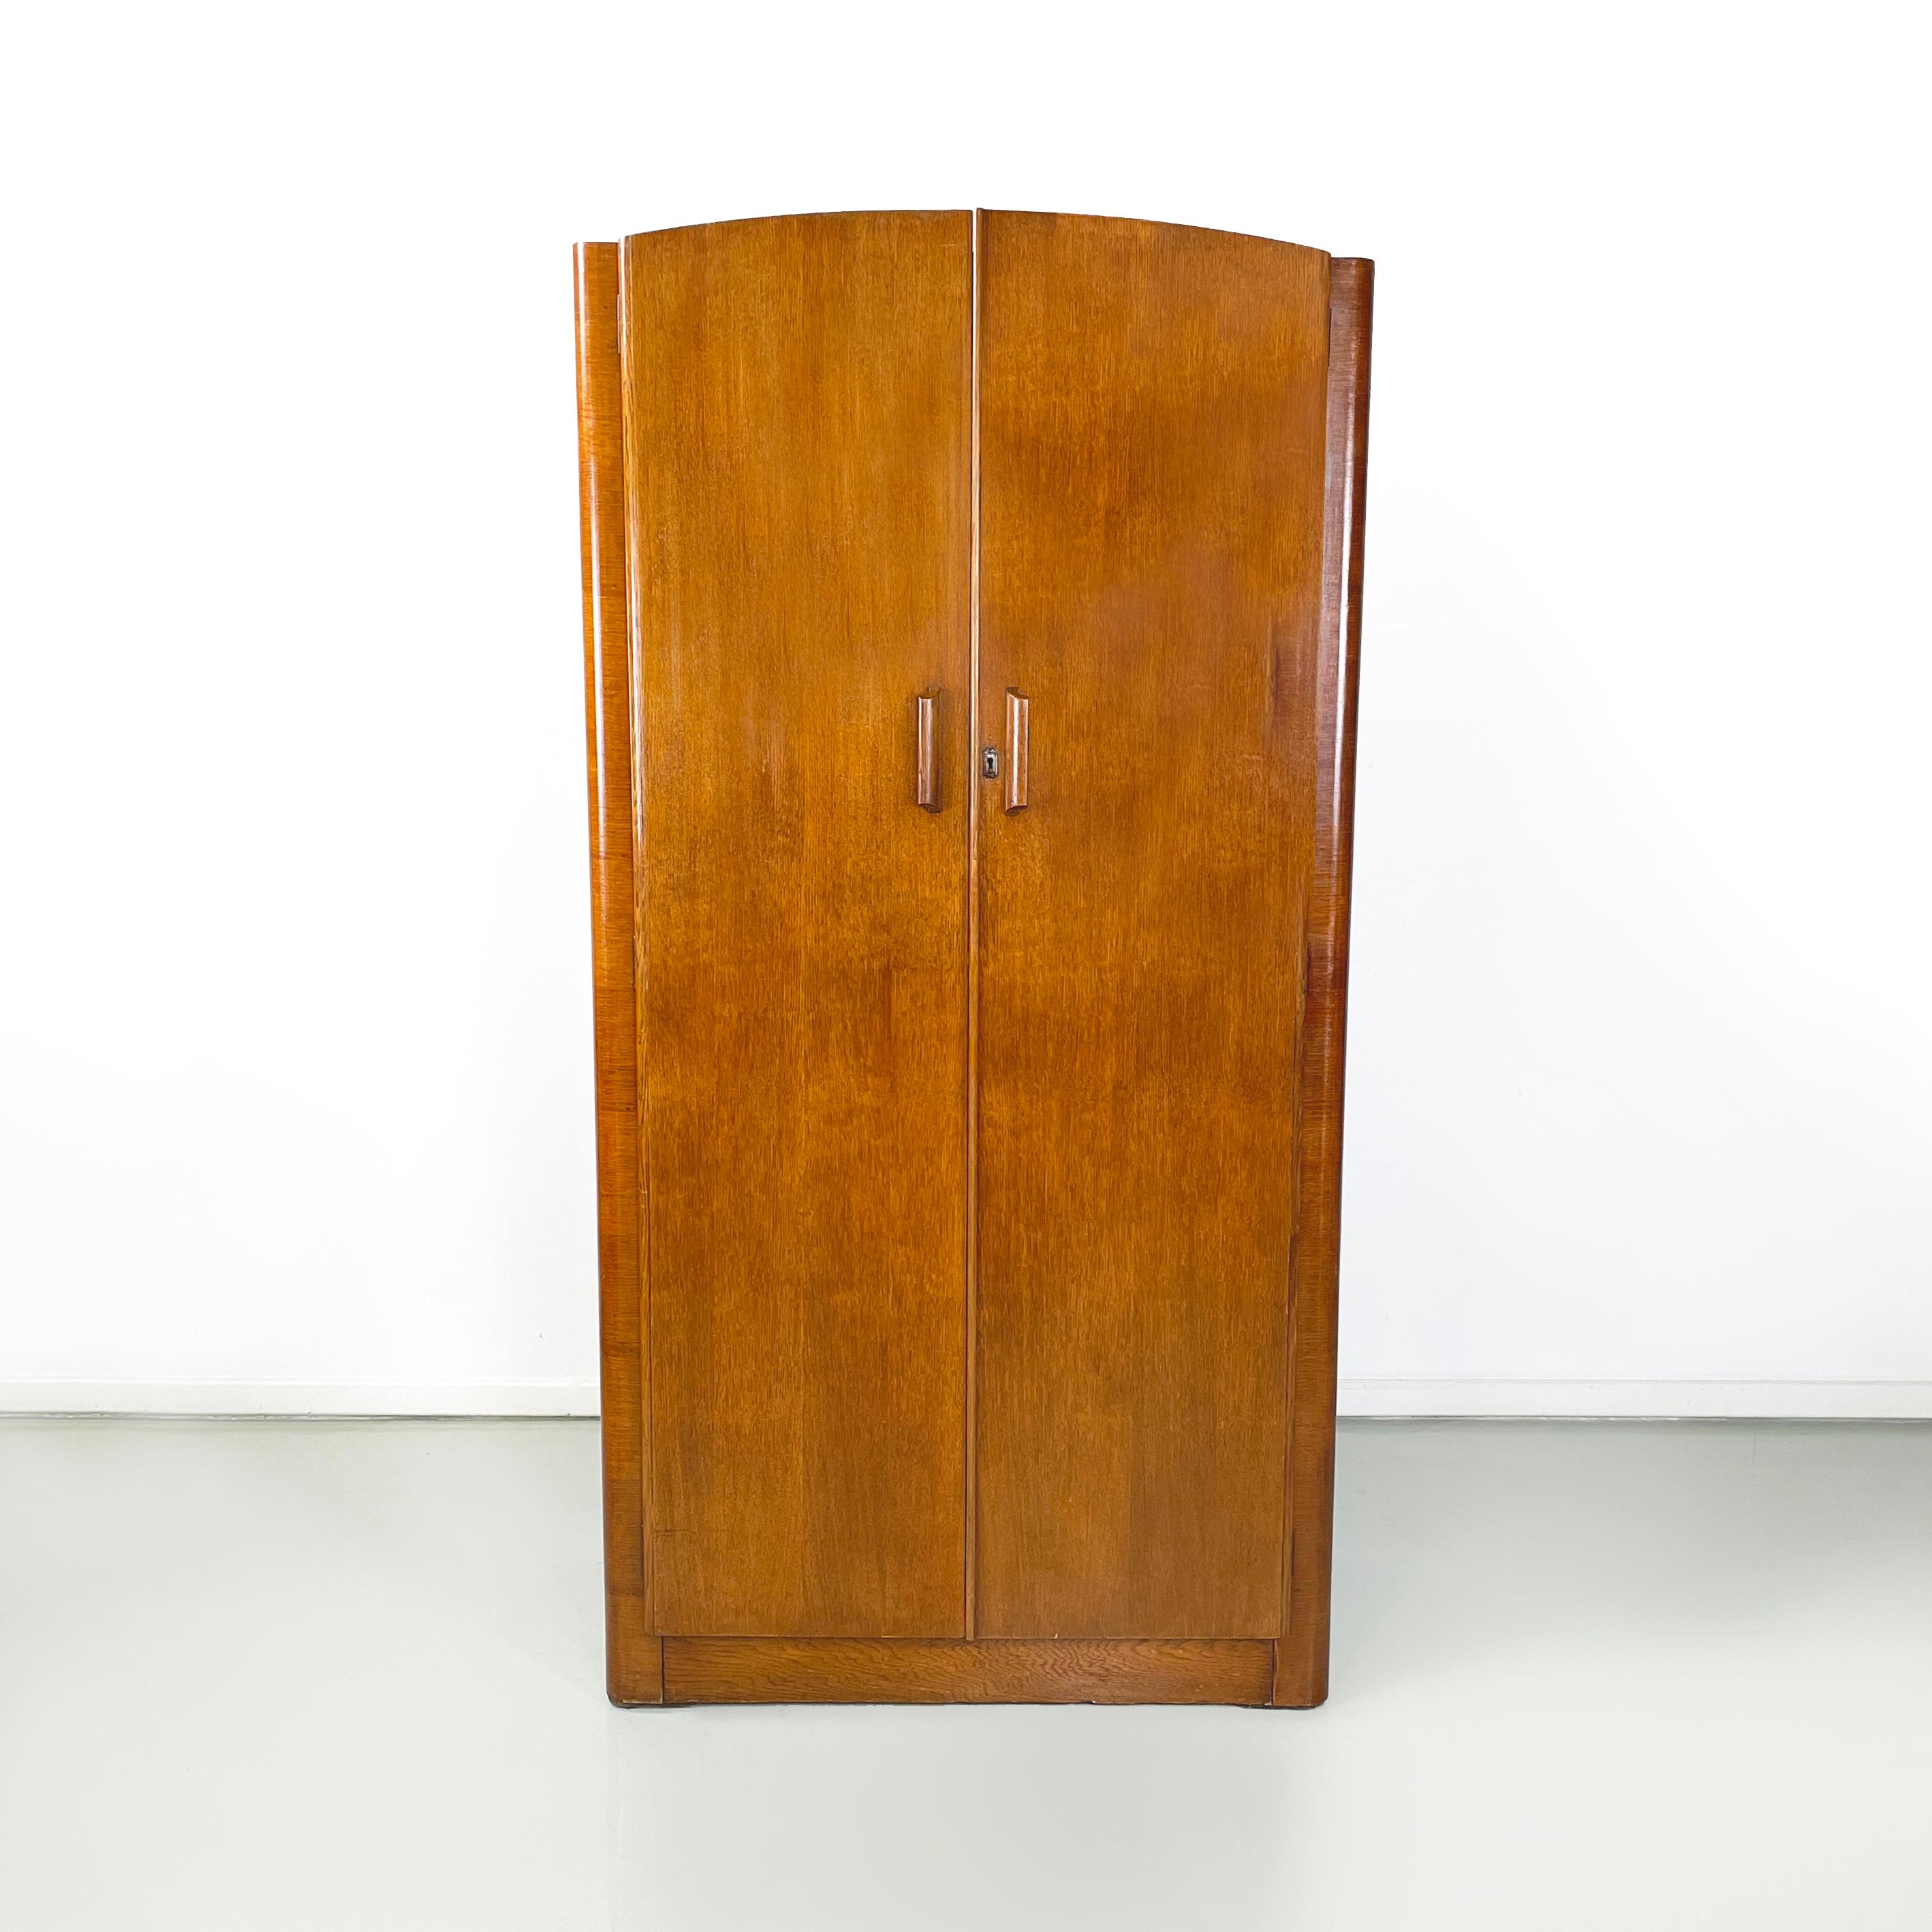 Armoire italienne en bois de style art déco avec miroir et étagères, années 1950
Armoire entièrement en bois massif avec double porte battante. A l'intérieur, il y a deux espaces. Sur la gauche, il y a un portemanteau métallique extractible avec une